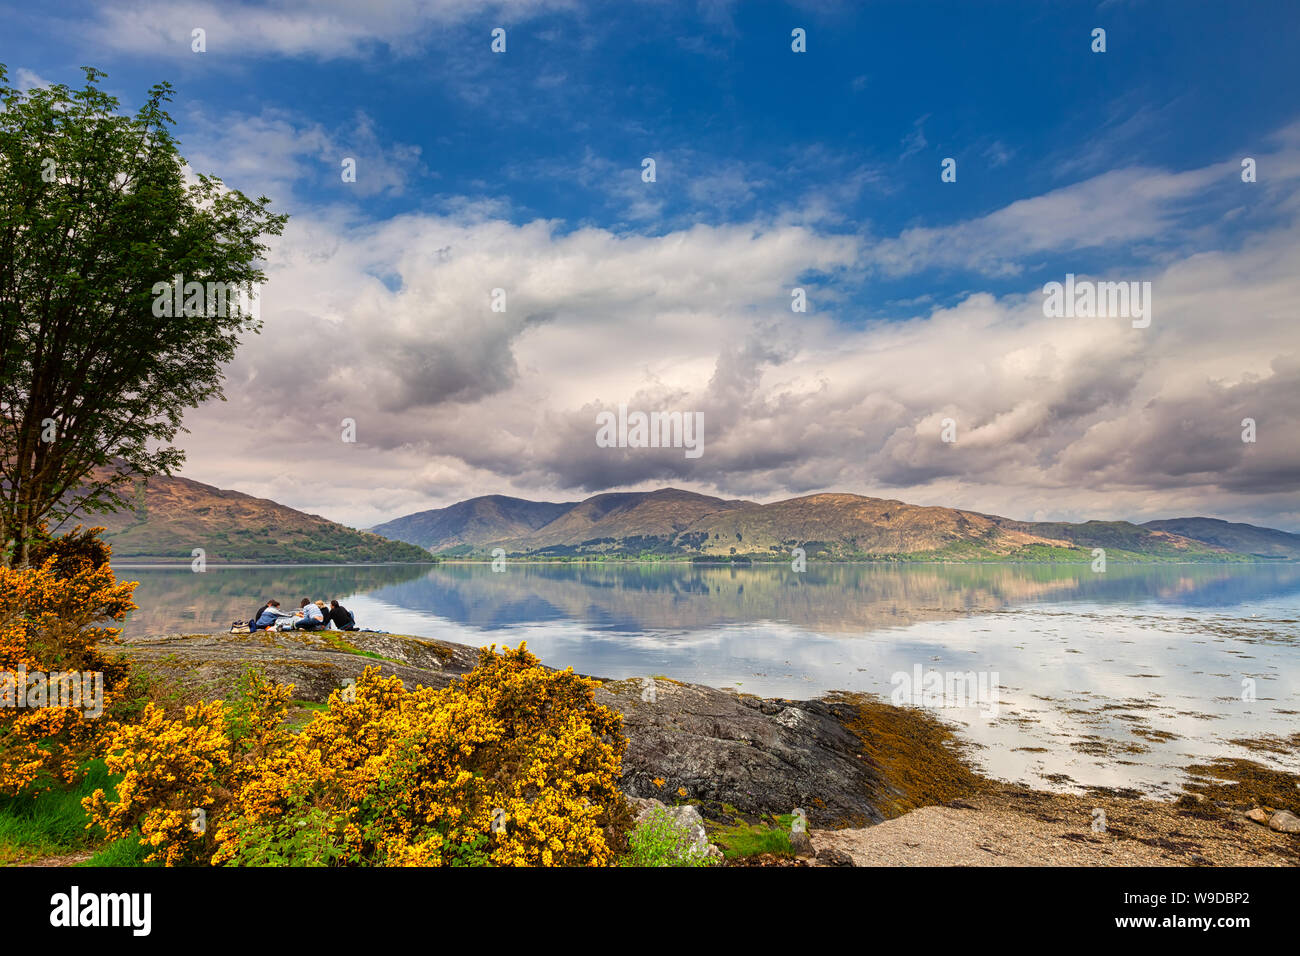 Les personnes ayant un pique-nique relaxant sur le Loch Linnhe dans les highlands un jour de printemps - côte ouest de l'Ecosse - Voyage d'image Banque D'Images